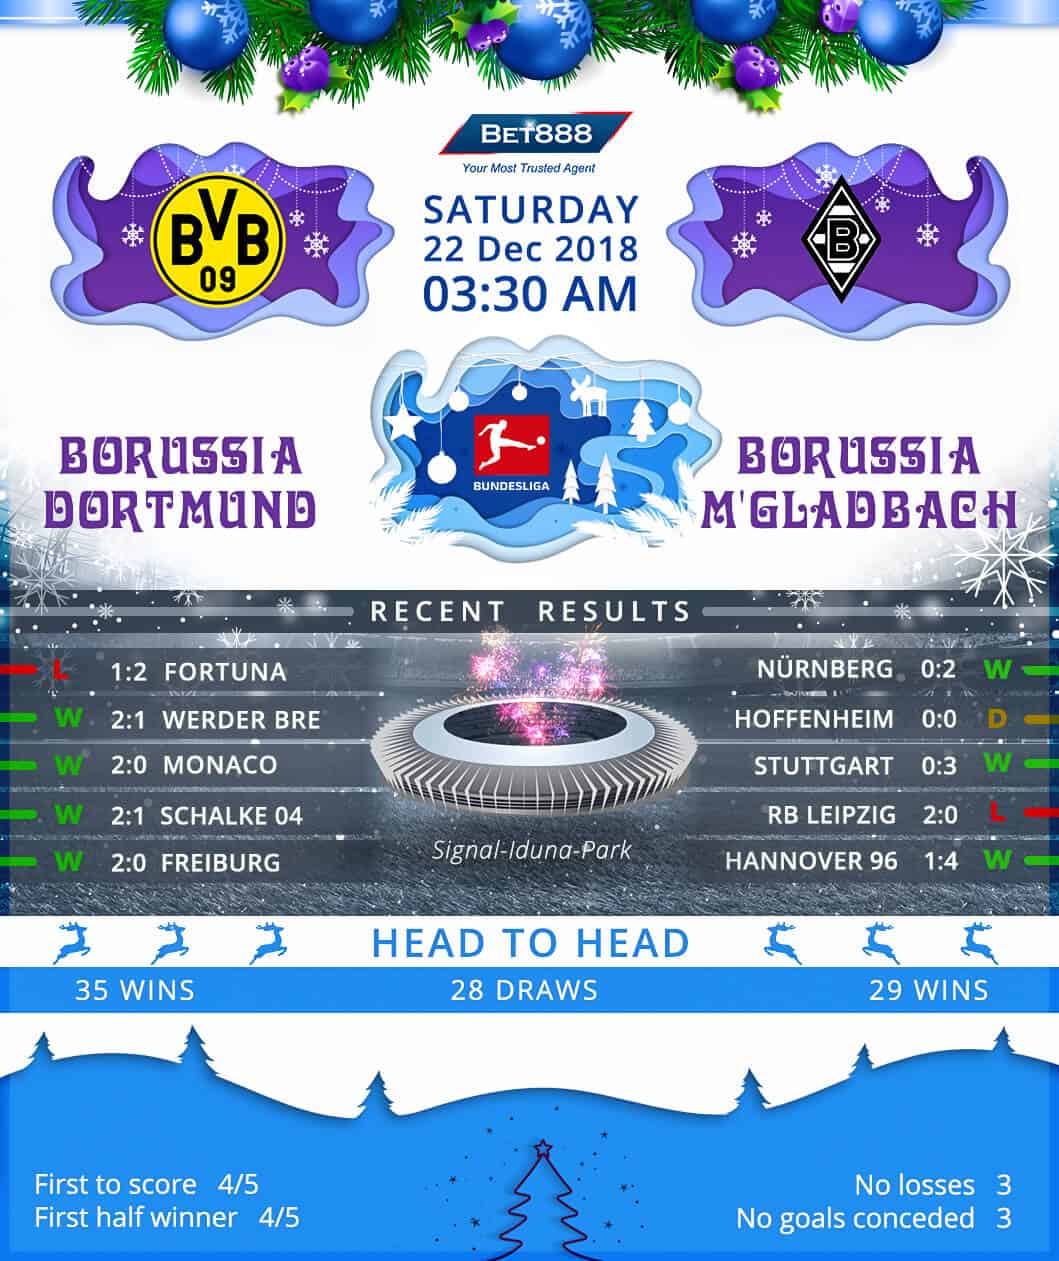 Borussia Dortmund vs Borussia Monchengladbach 22/12/18